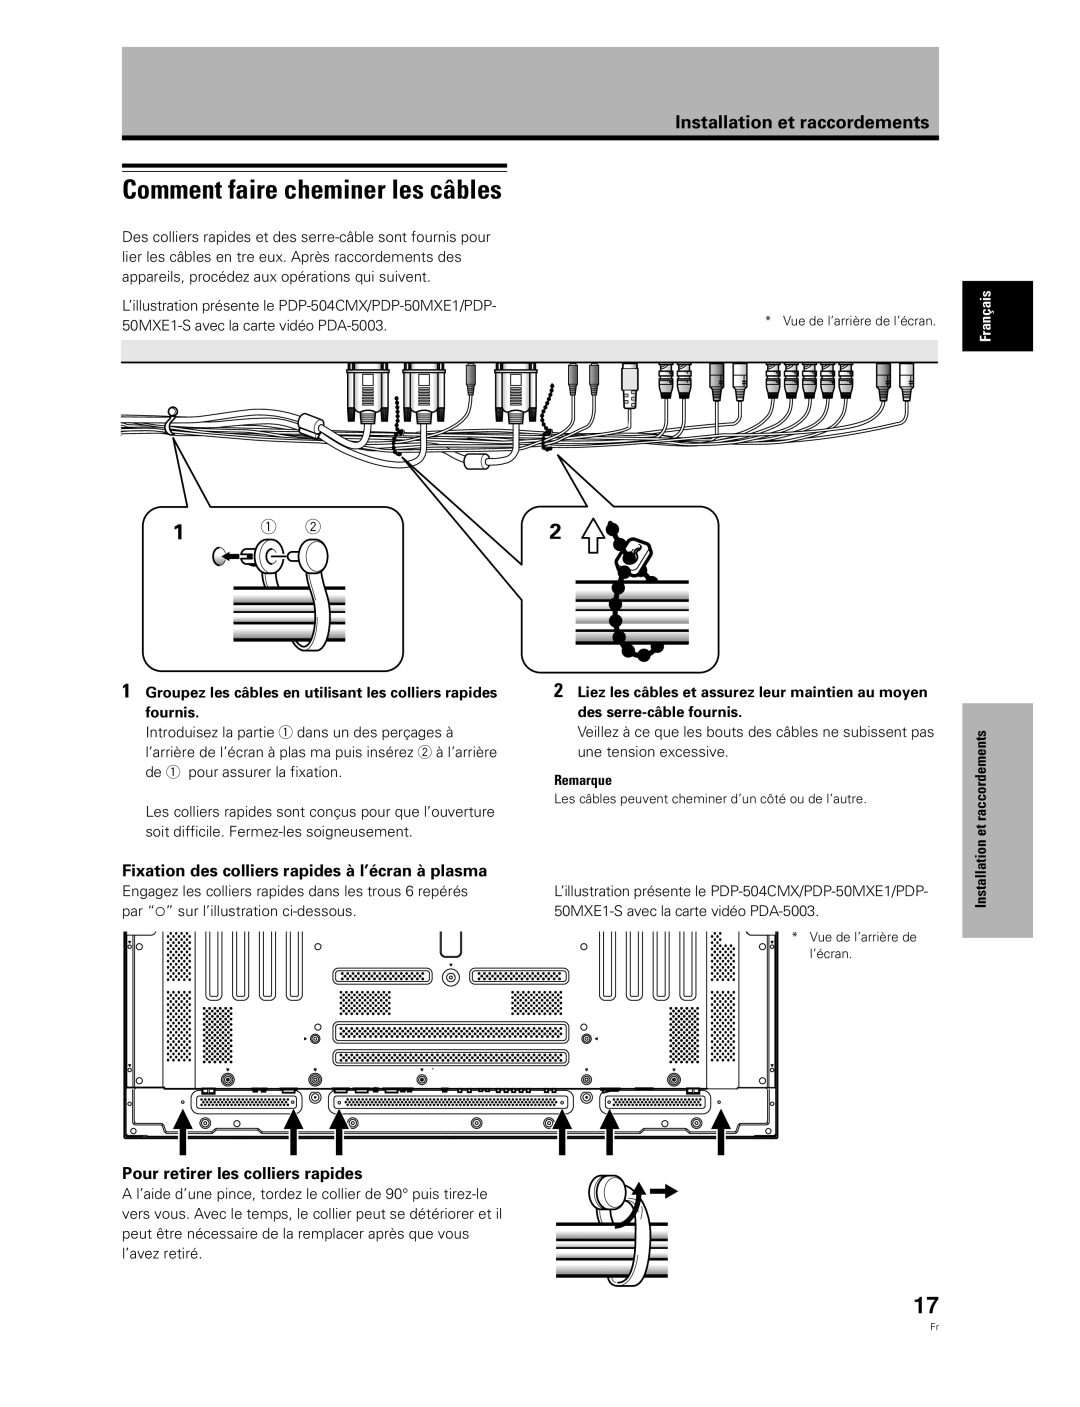 Pioneer PDA-5003, PDA-5004 manual Comment faire cheminer les câbles, Fixation des colliers rapides à l’écran à plasma 